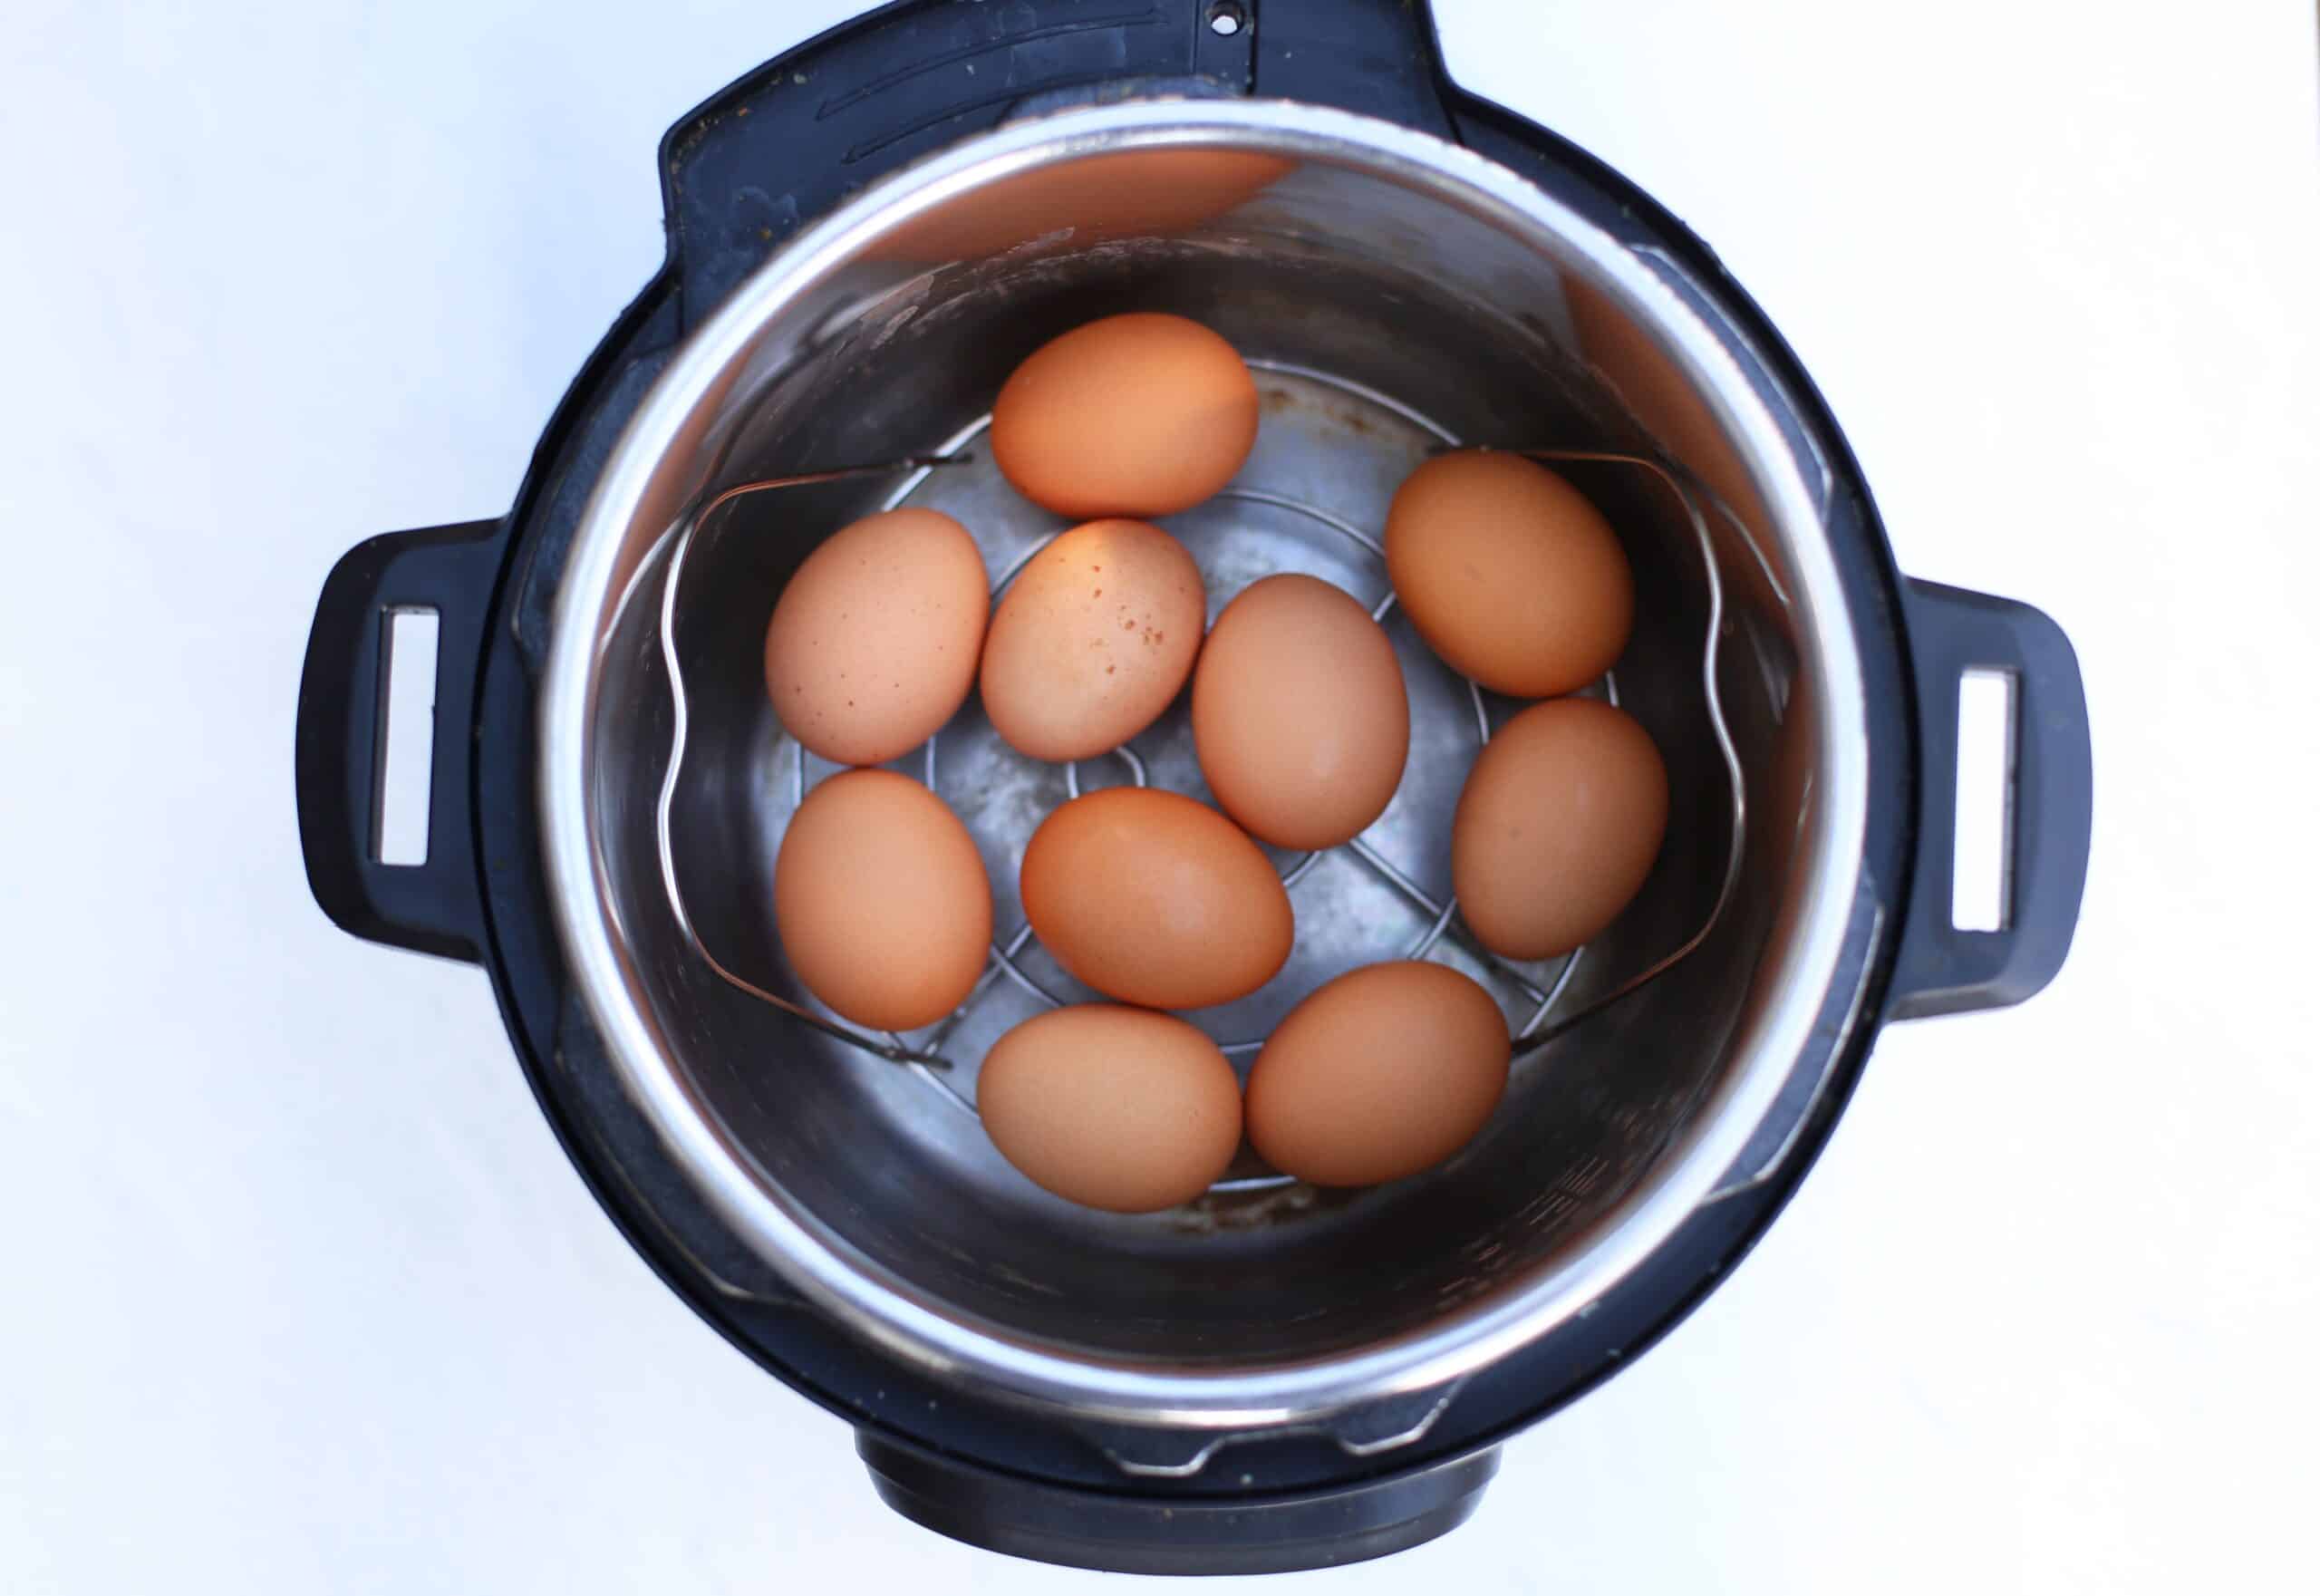 https://thrivinghomeblog.com/wp-content/uploads/2022/09/instant-pot-hard-boiled-egg-scaled.jpg